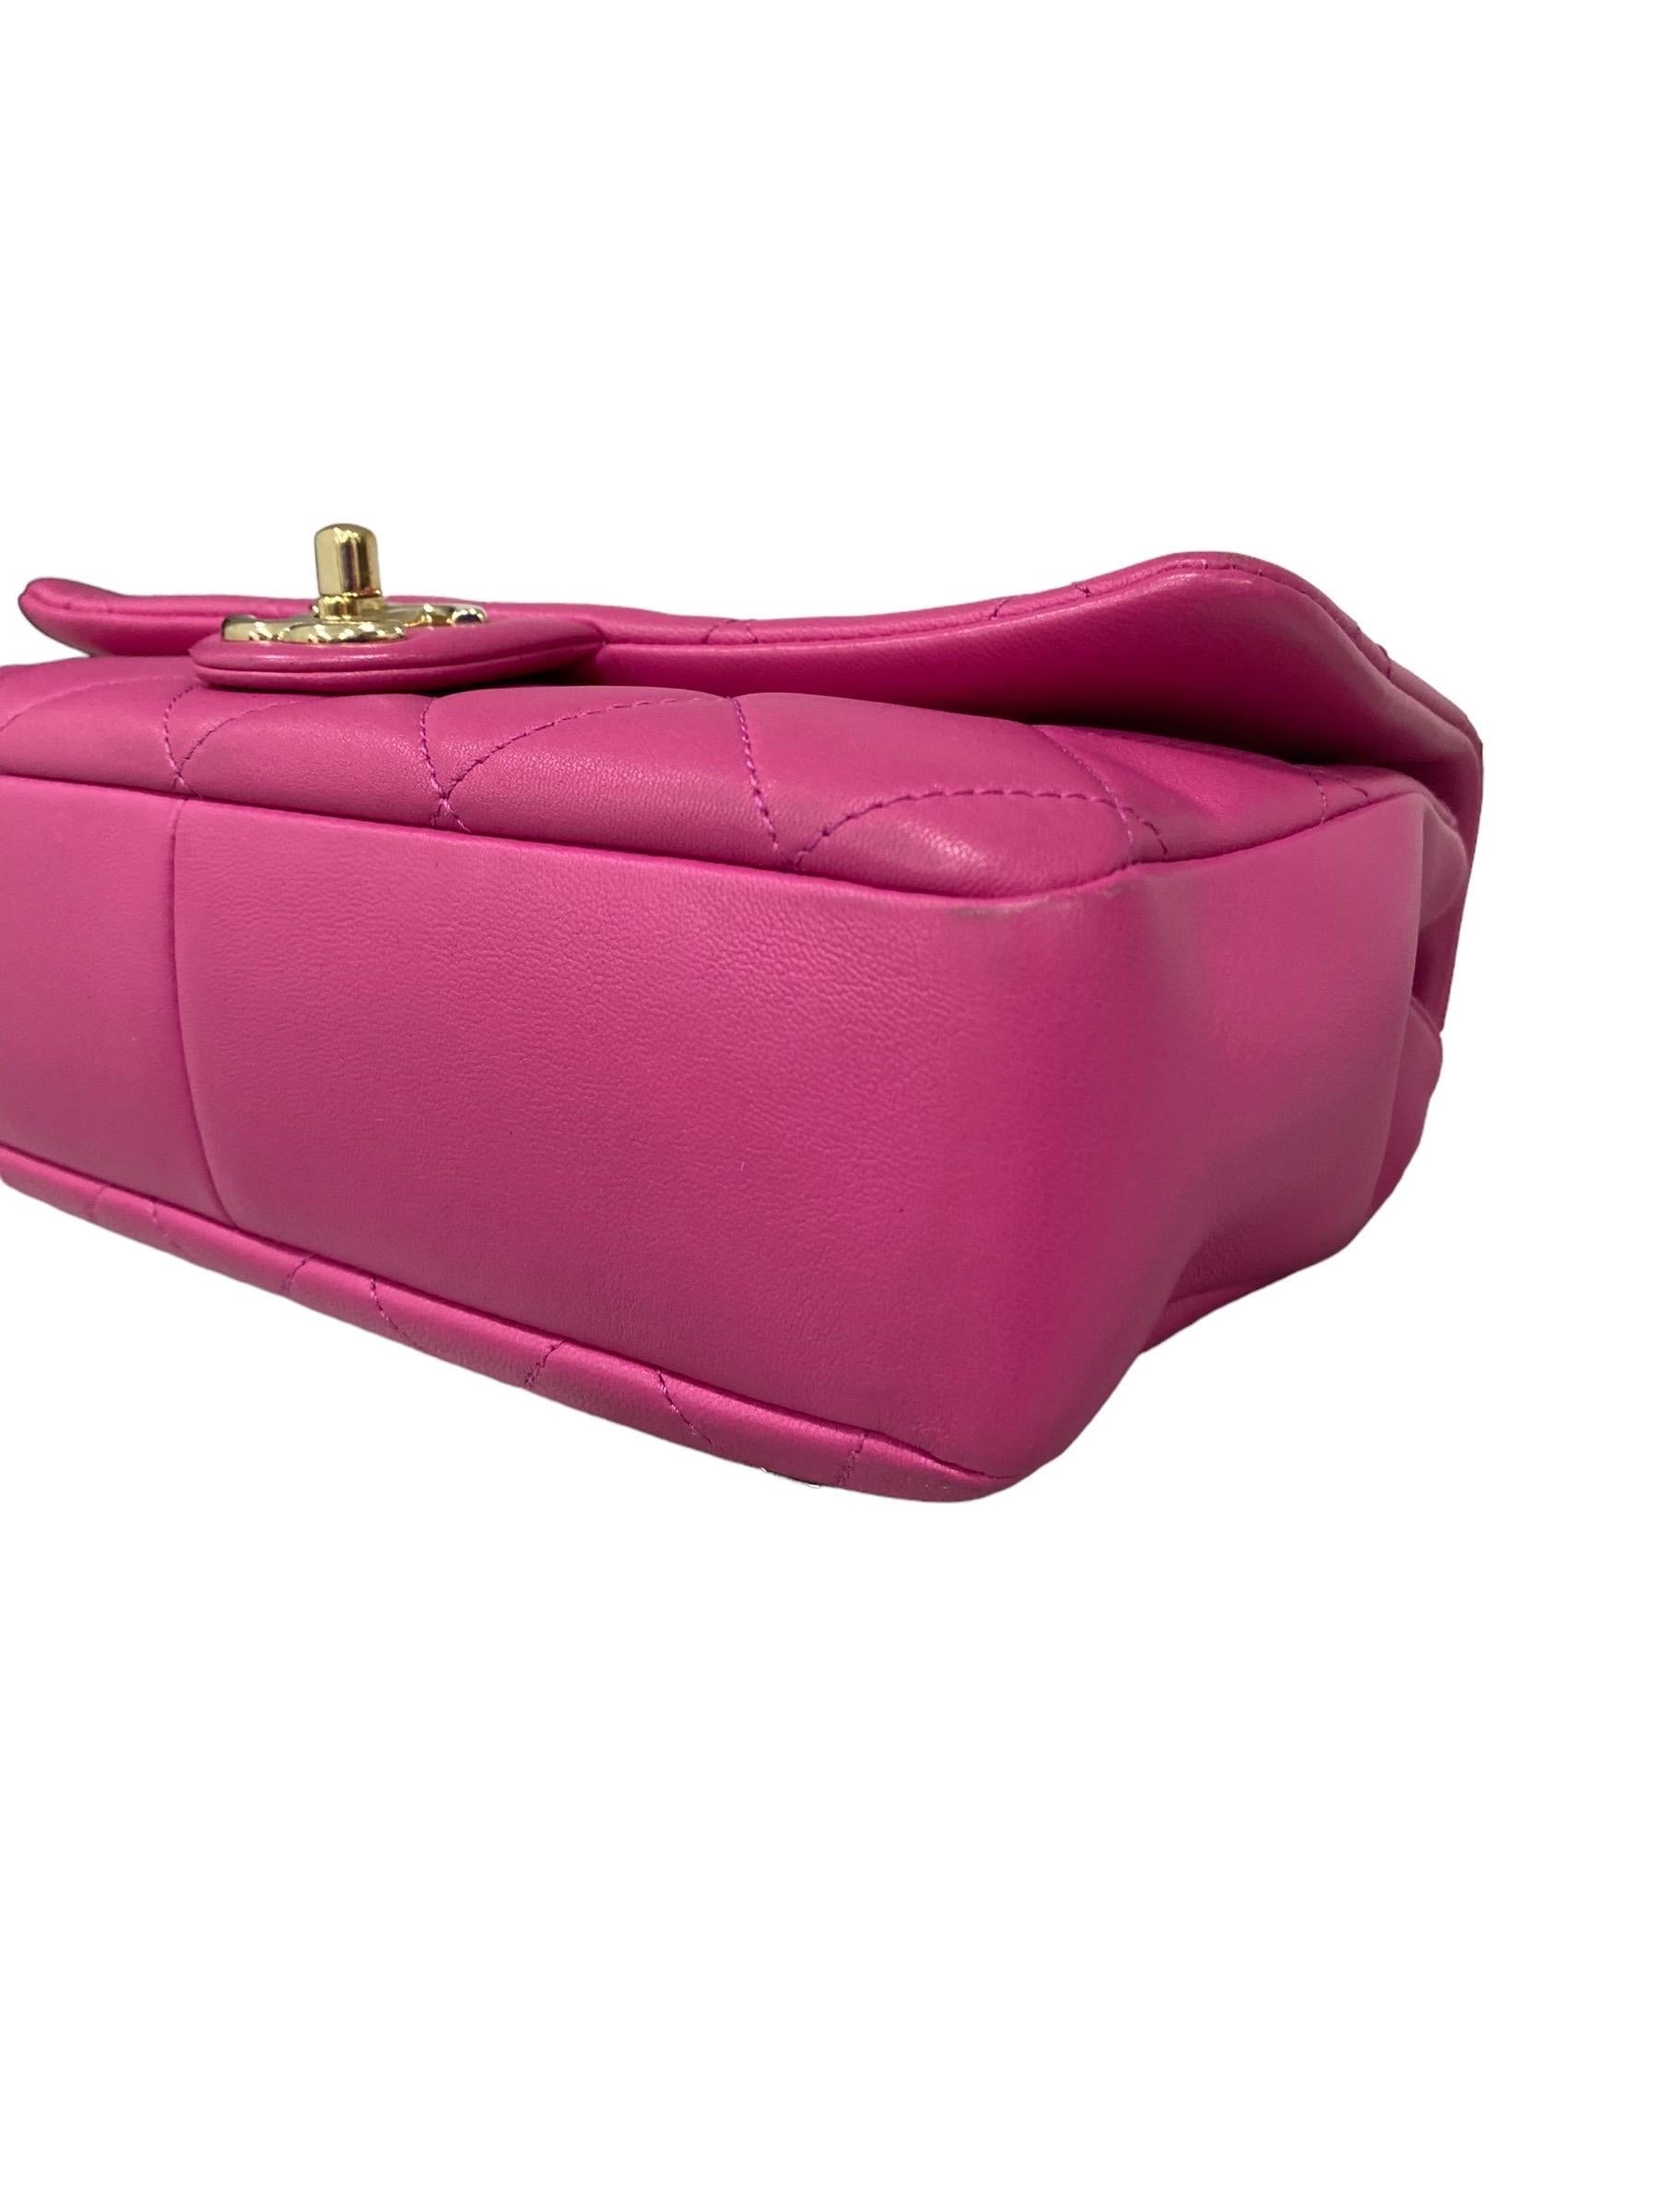 2021 Chanel 19 Pink Shoulder Bag  For Sale 3